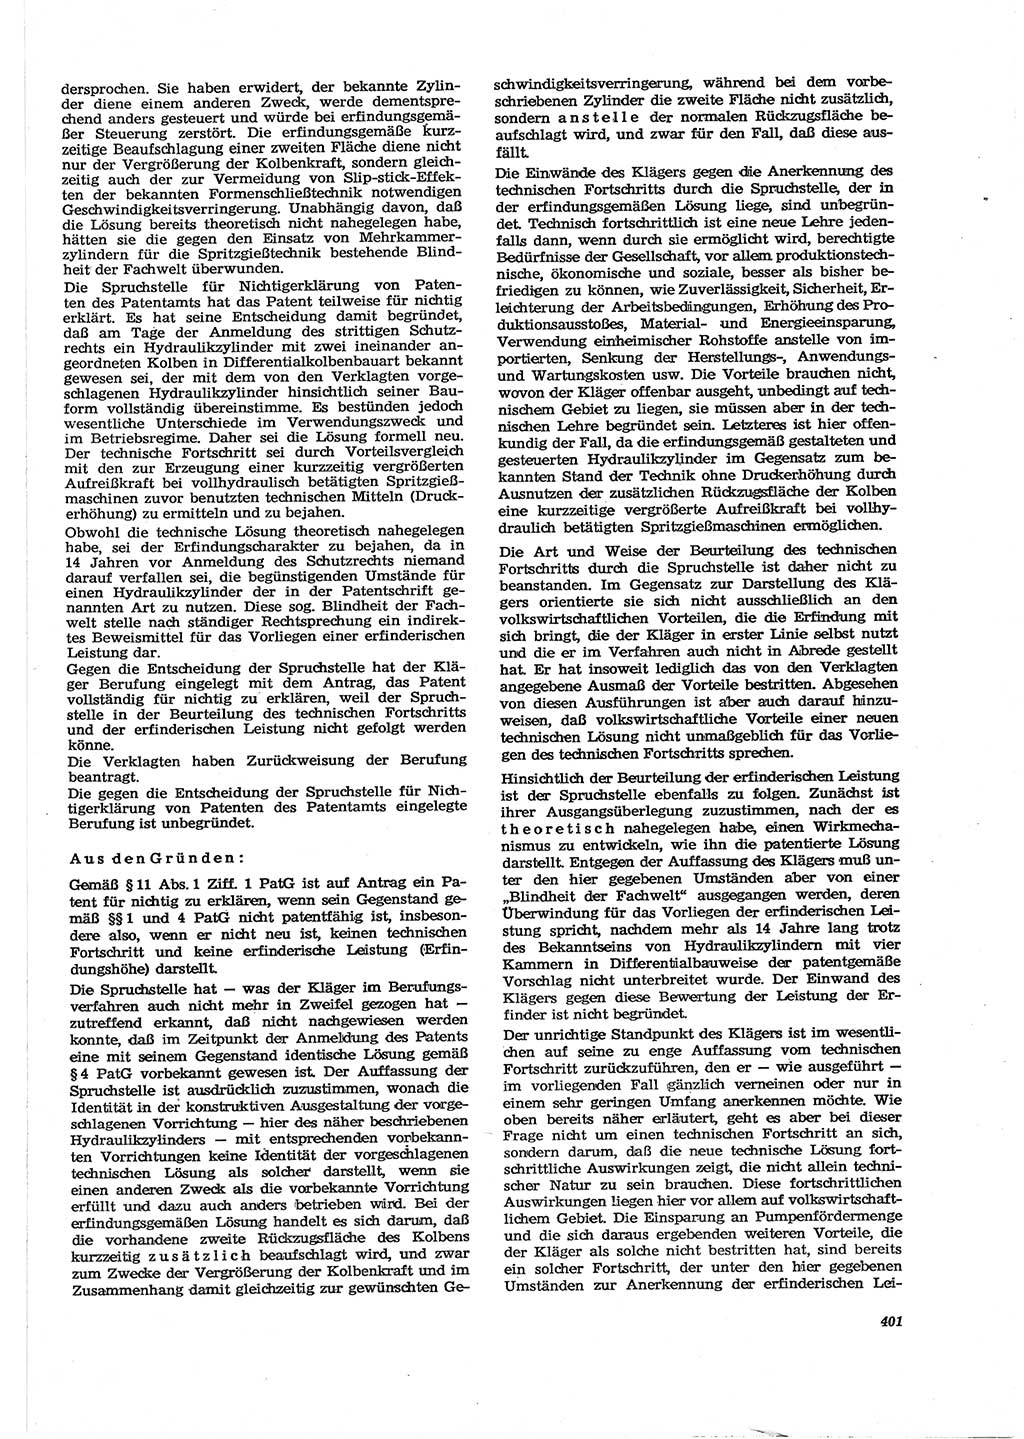 Neue Justiz (NJ), Zeitschrift für Recht und Rechtswissenschaft [Deutsche Demokratische Republik (DDR)], 30. Jahrgang 1976, Seite 401 (NJ DDR 1976, S. 401)